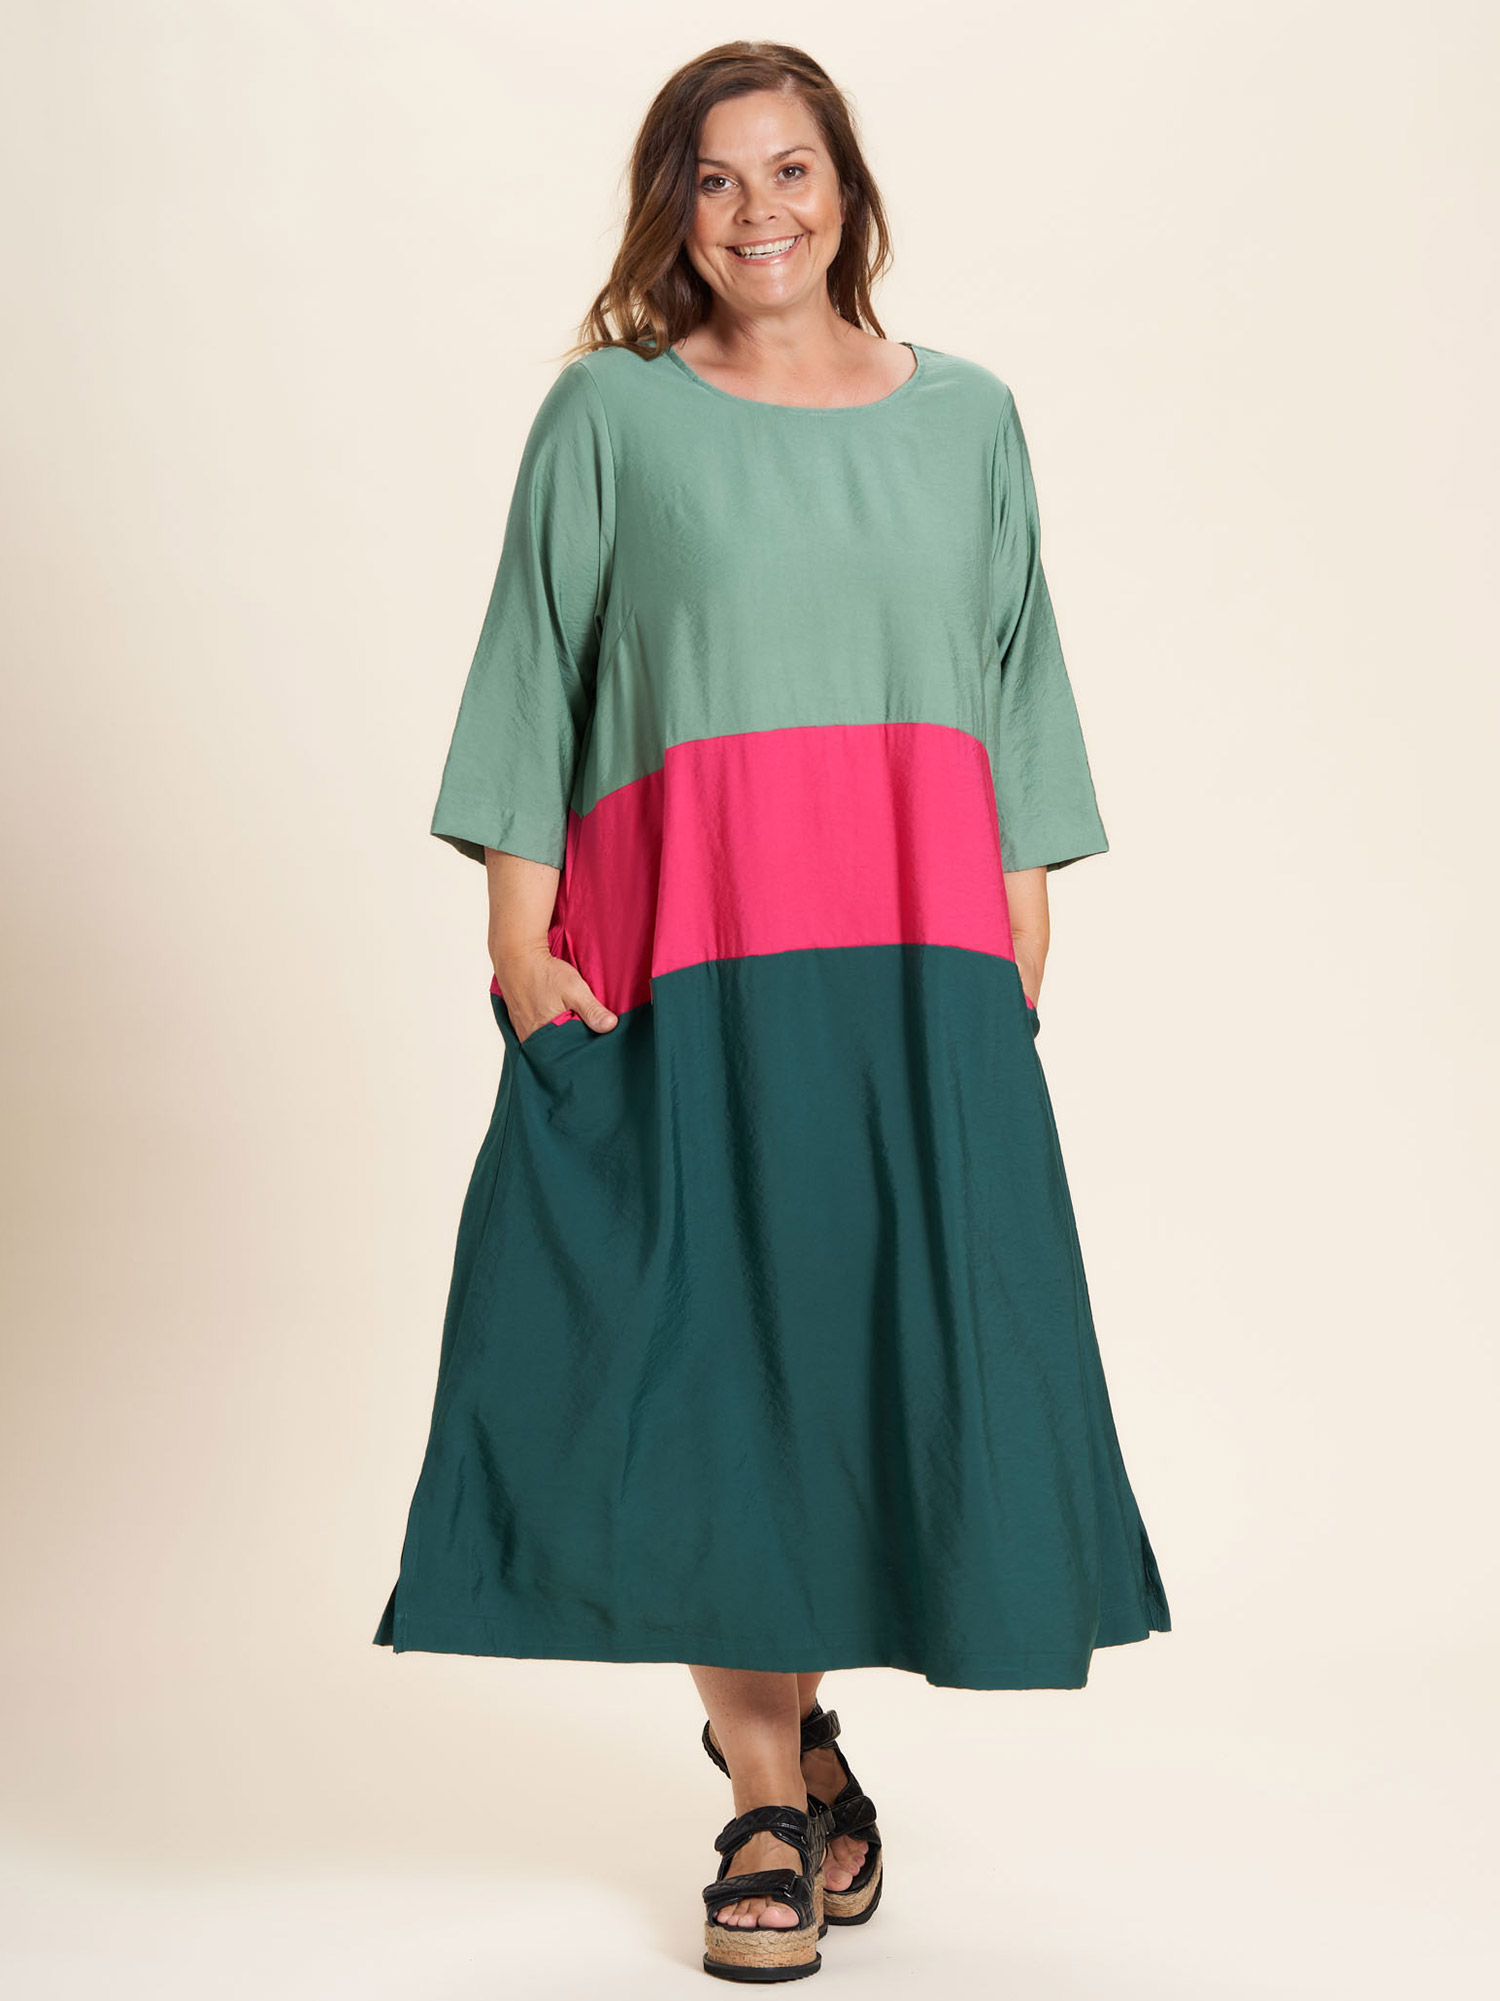 Gozzip Lang kjole i skønt farve mix med grøn og pink i flotte brede striber, 46-48 / M